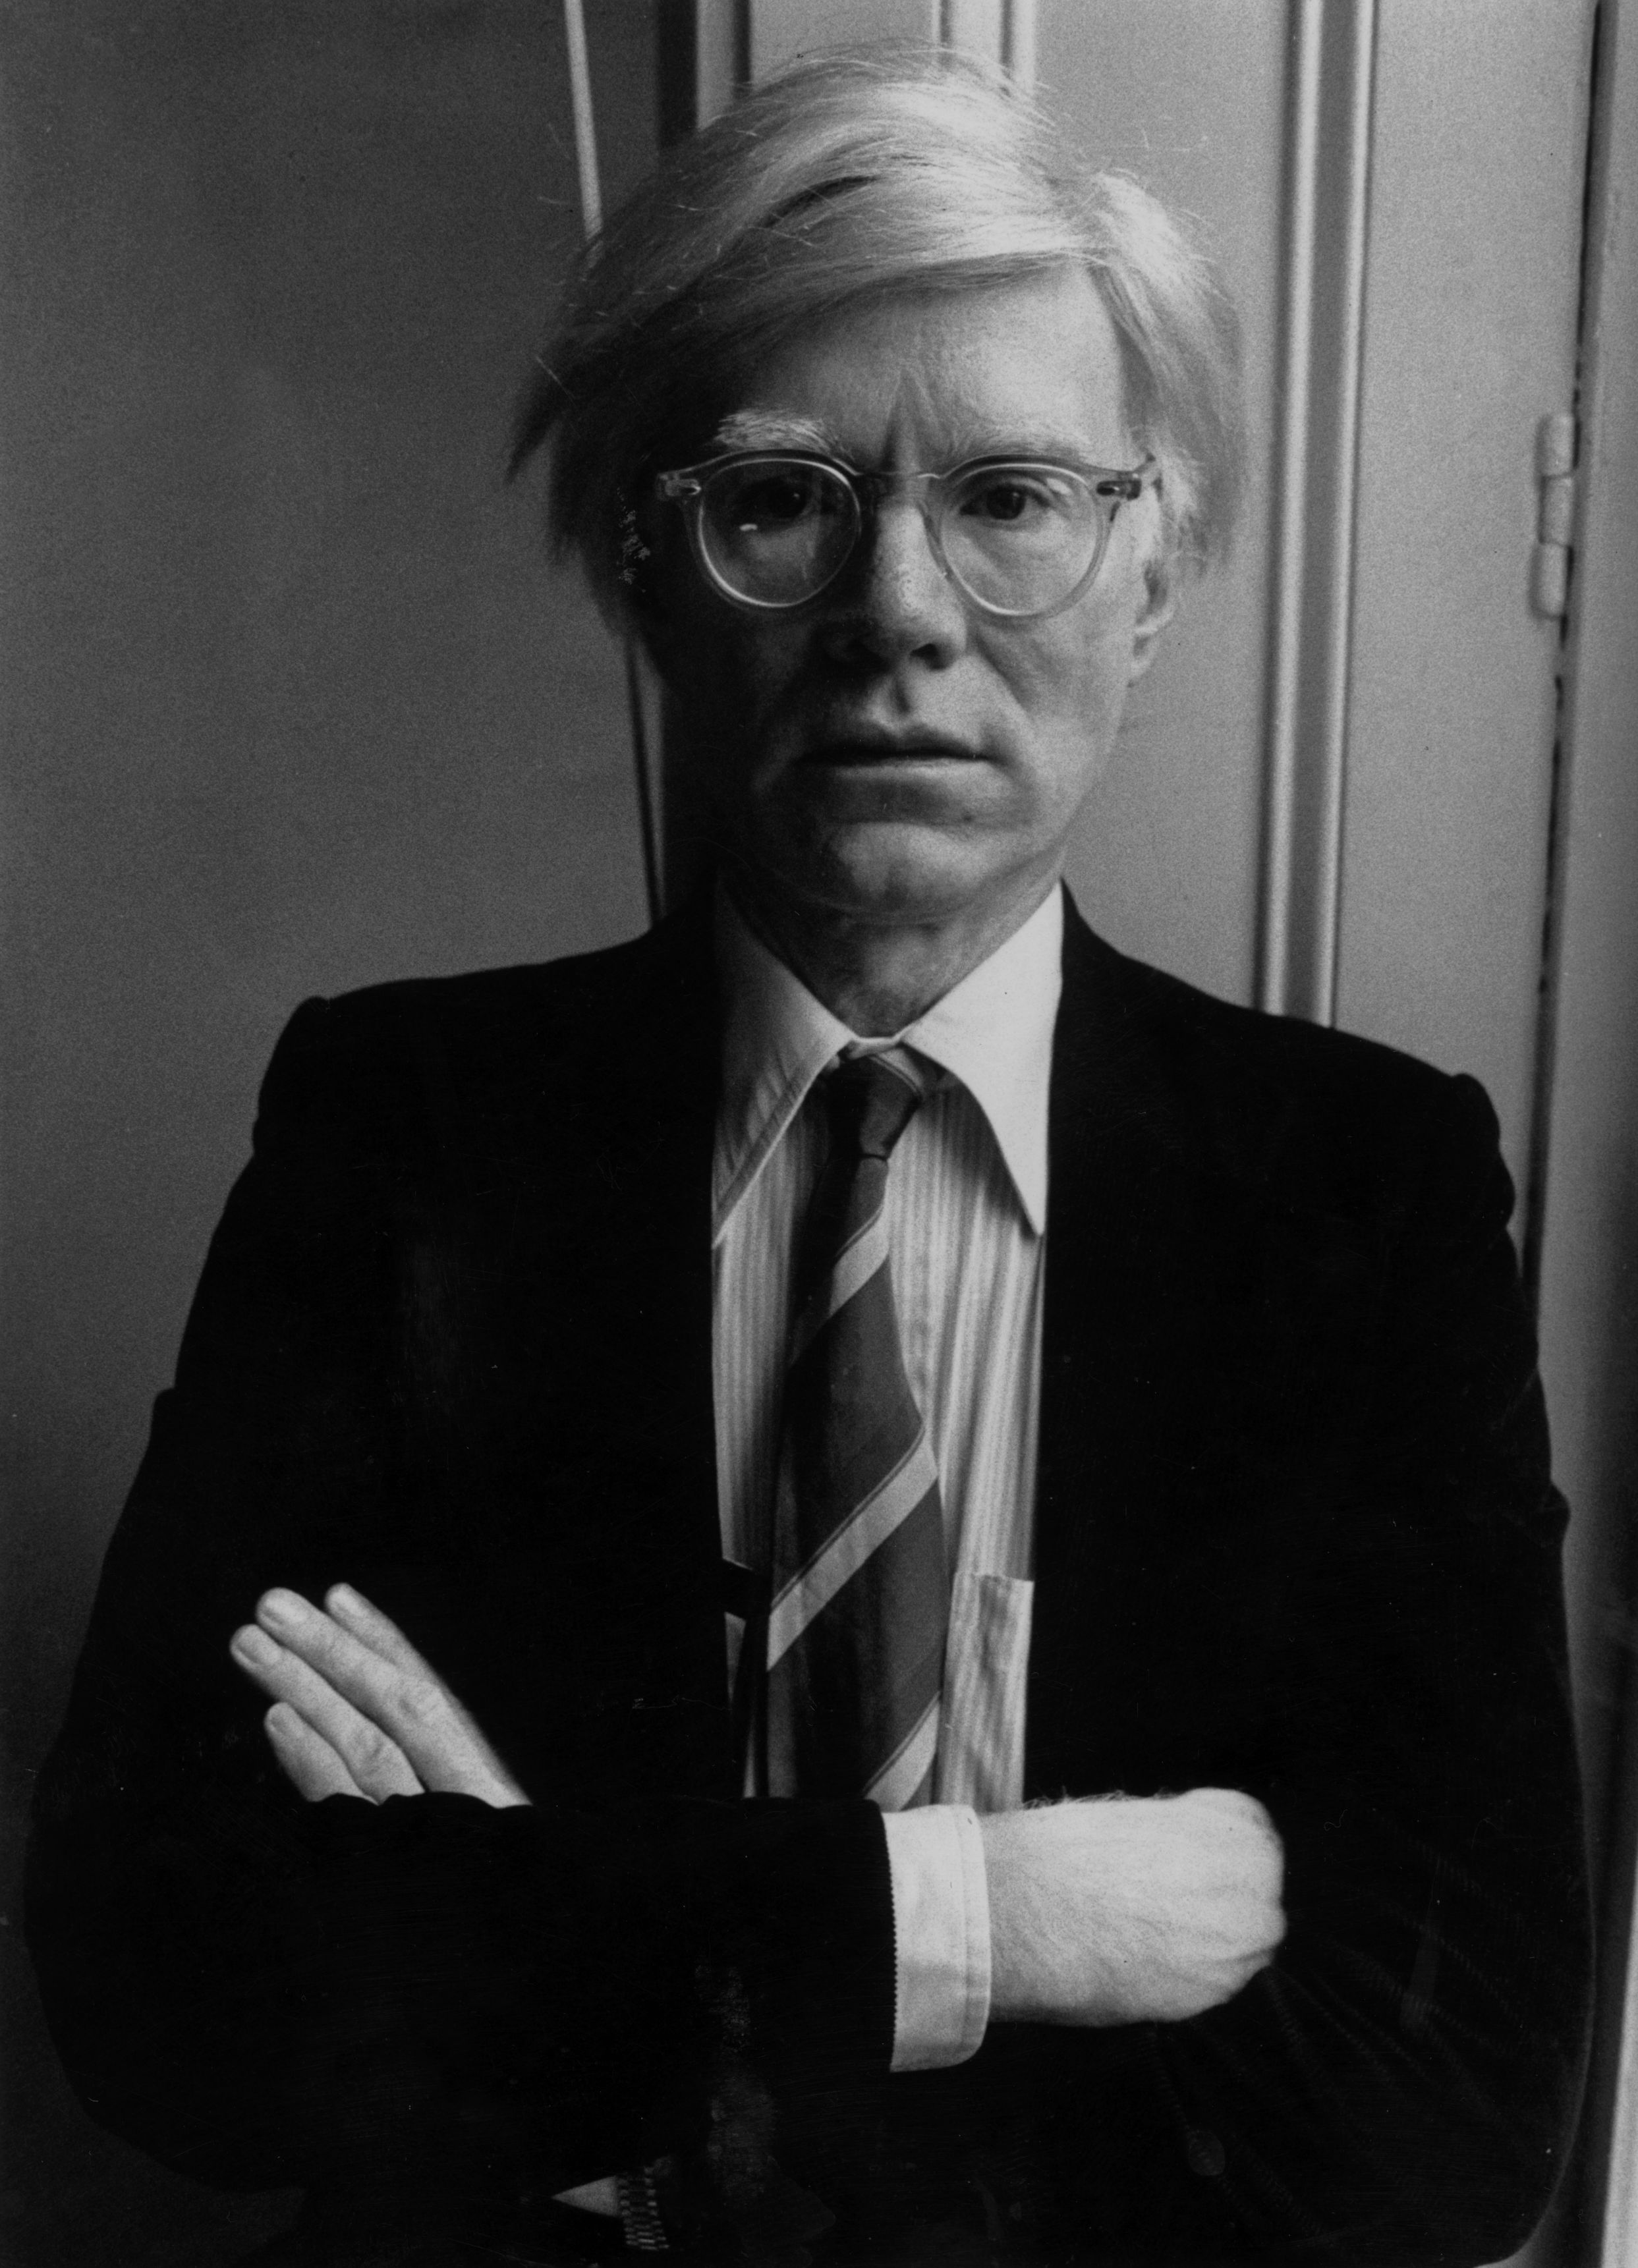 Andy Warhol - 6 agosto 1928 - 22 febbraio 1987